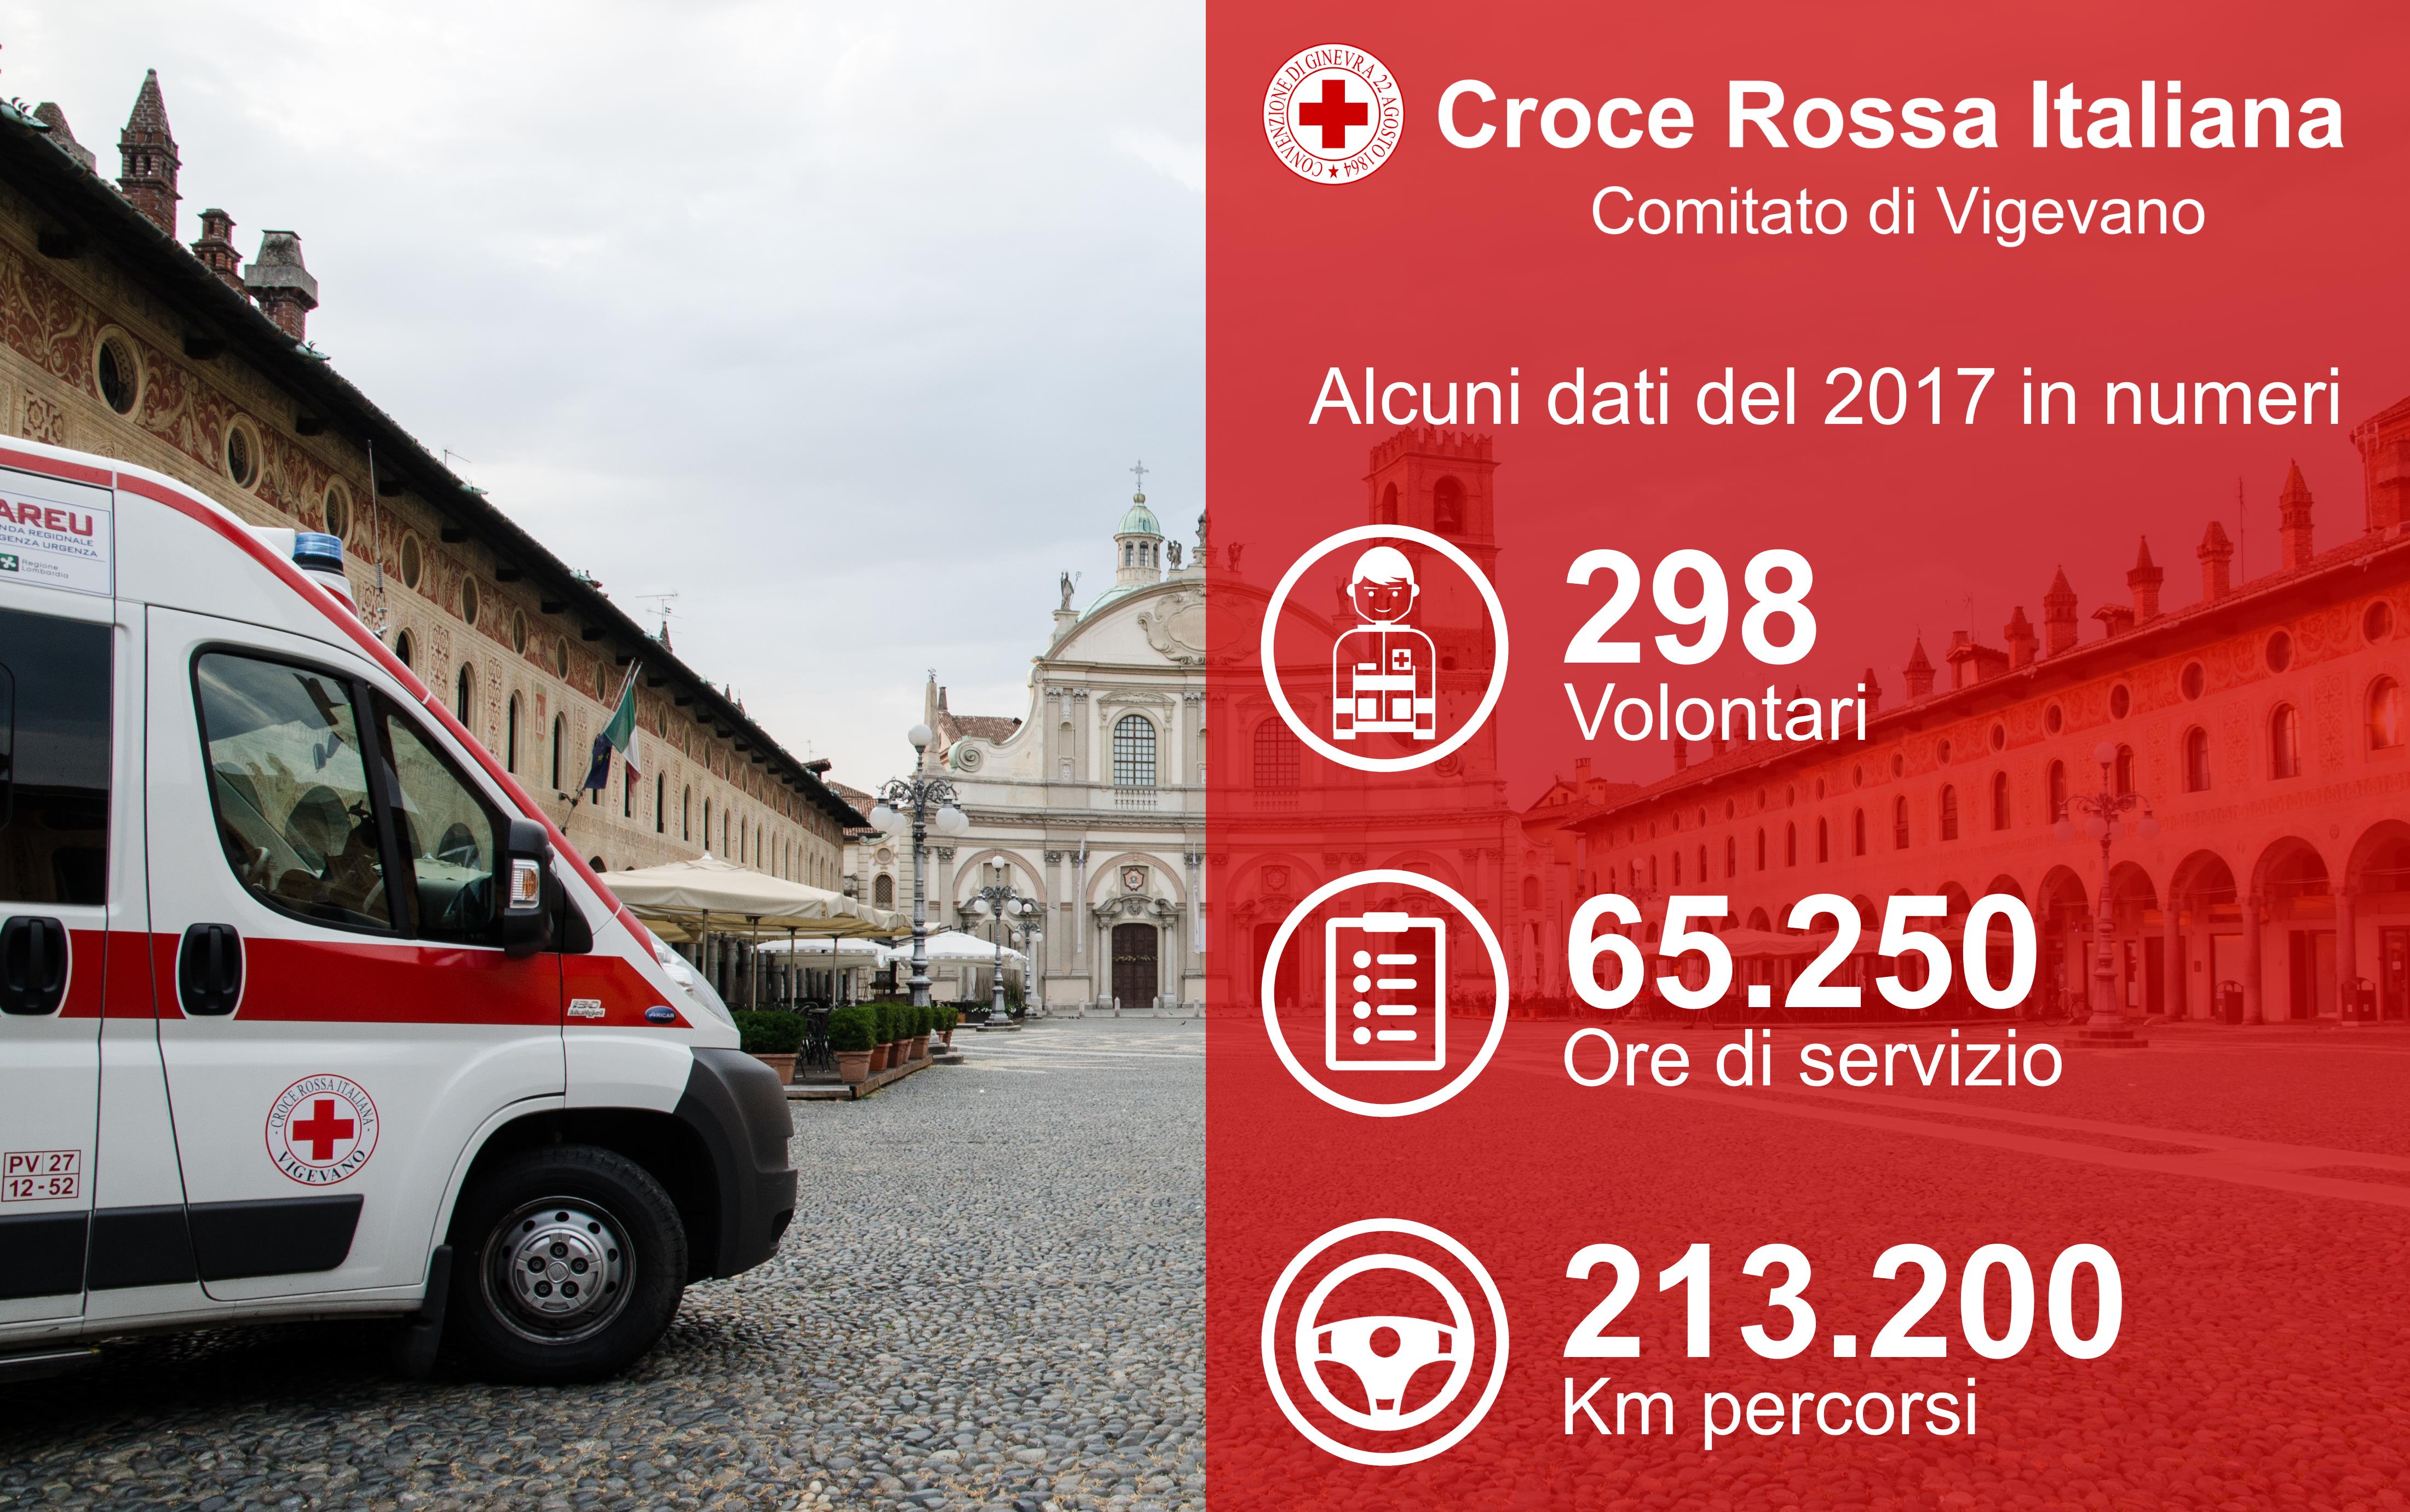 Croce Rossa Italiana Comitato di Vigevano